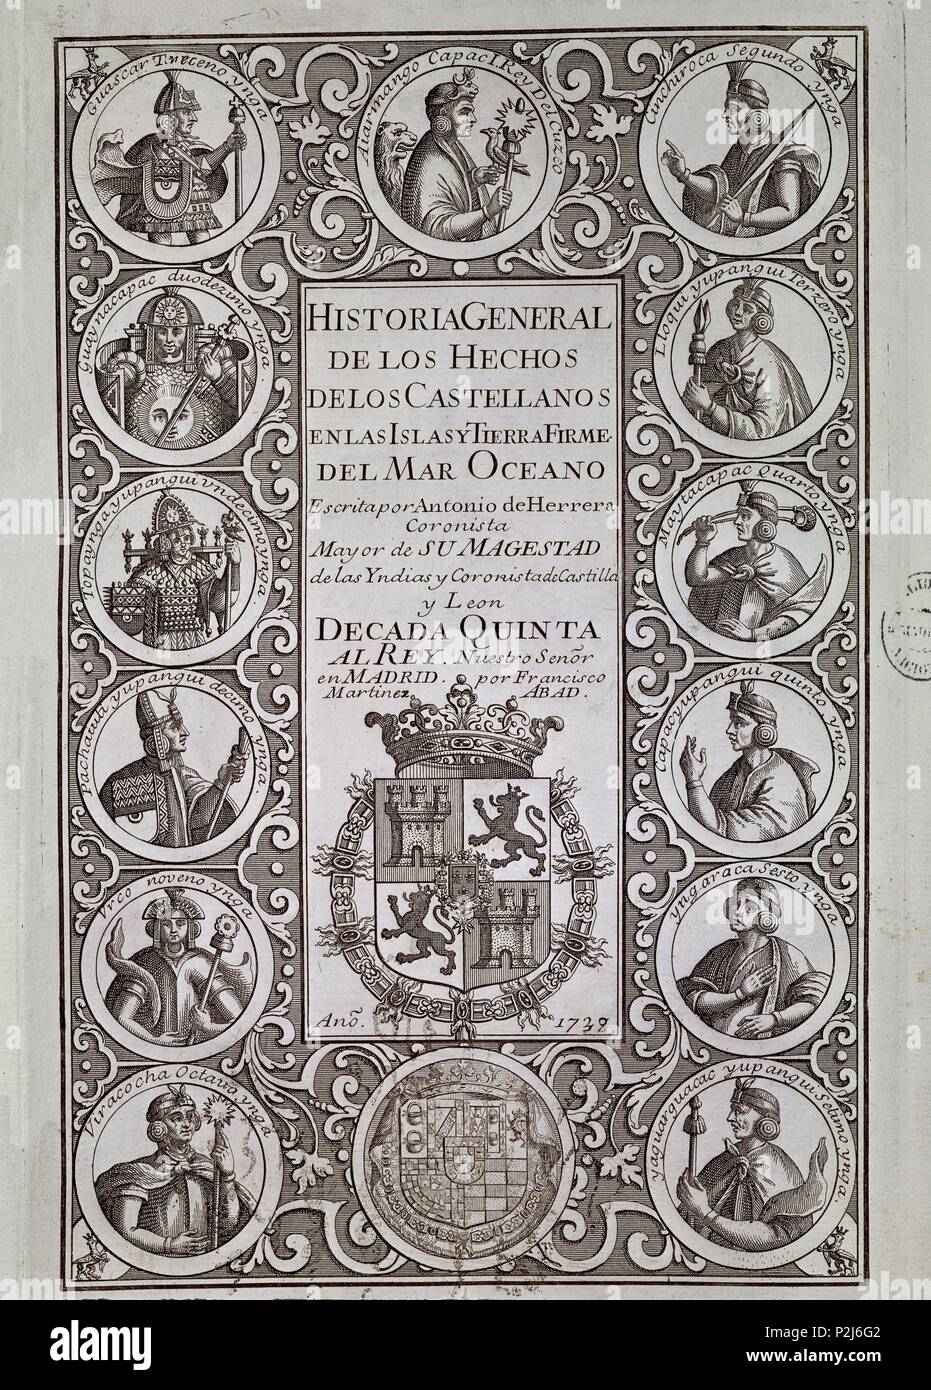 HISTORIA GENERAL DE LOS HECHOS CASTELLANOS EN ISLAS Y TIERRA FIRME DEL MAR OCEANO - DECADA QUINTA-MADRID - 1739. Author: Antonio Herrera y Tordesillas (1549-1625). Location: BIBLIOTECA NACIONAL-COLECCION, MADRID. Stock Photo